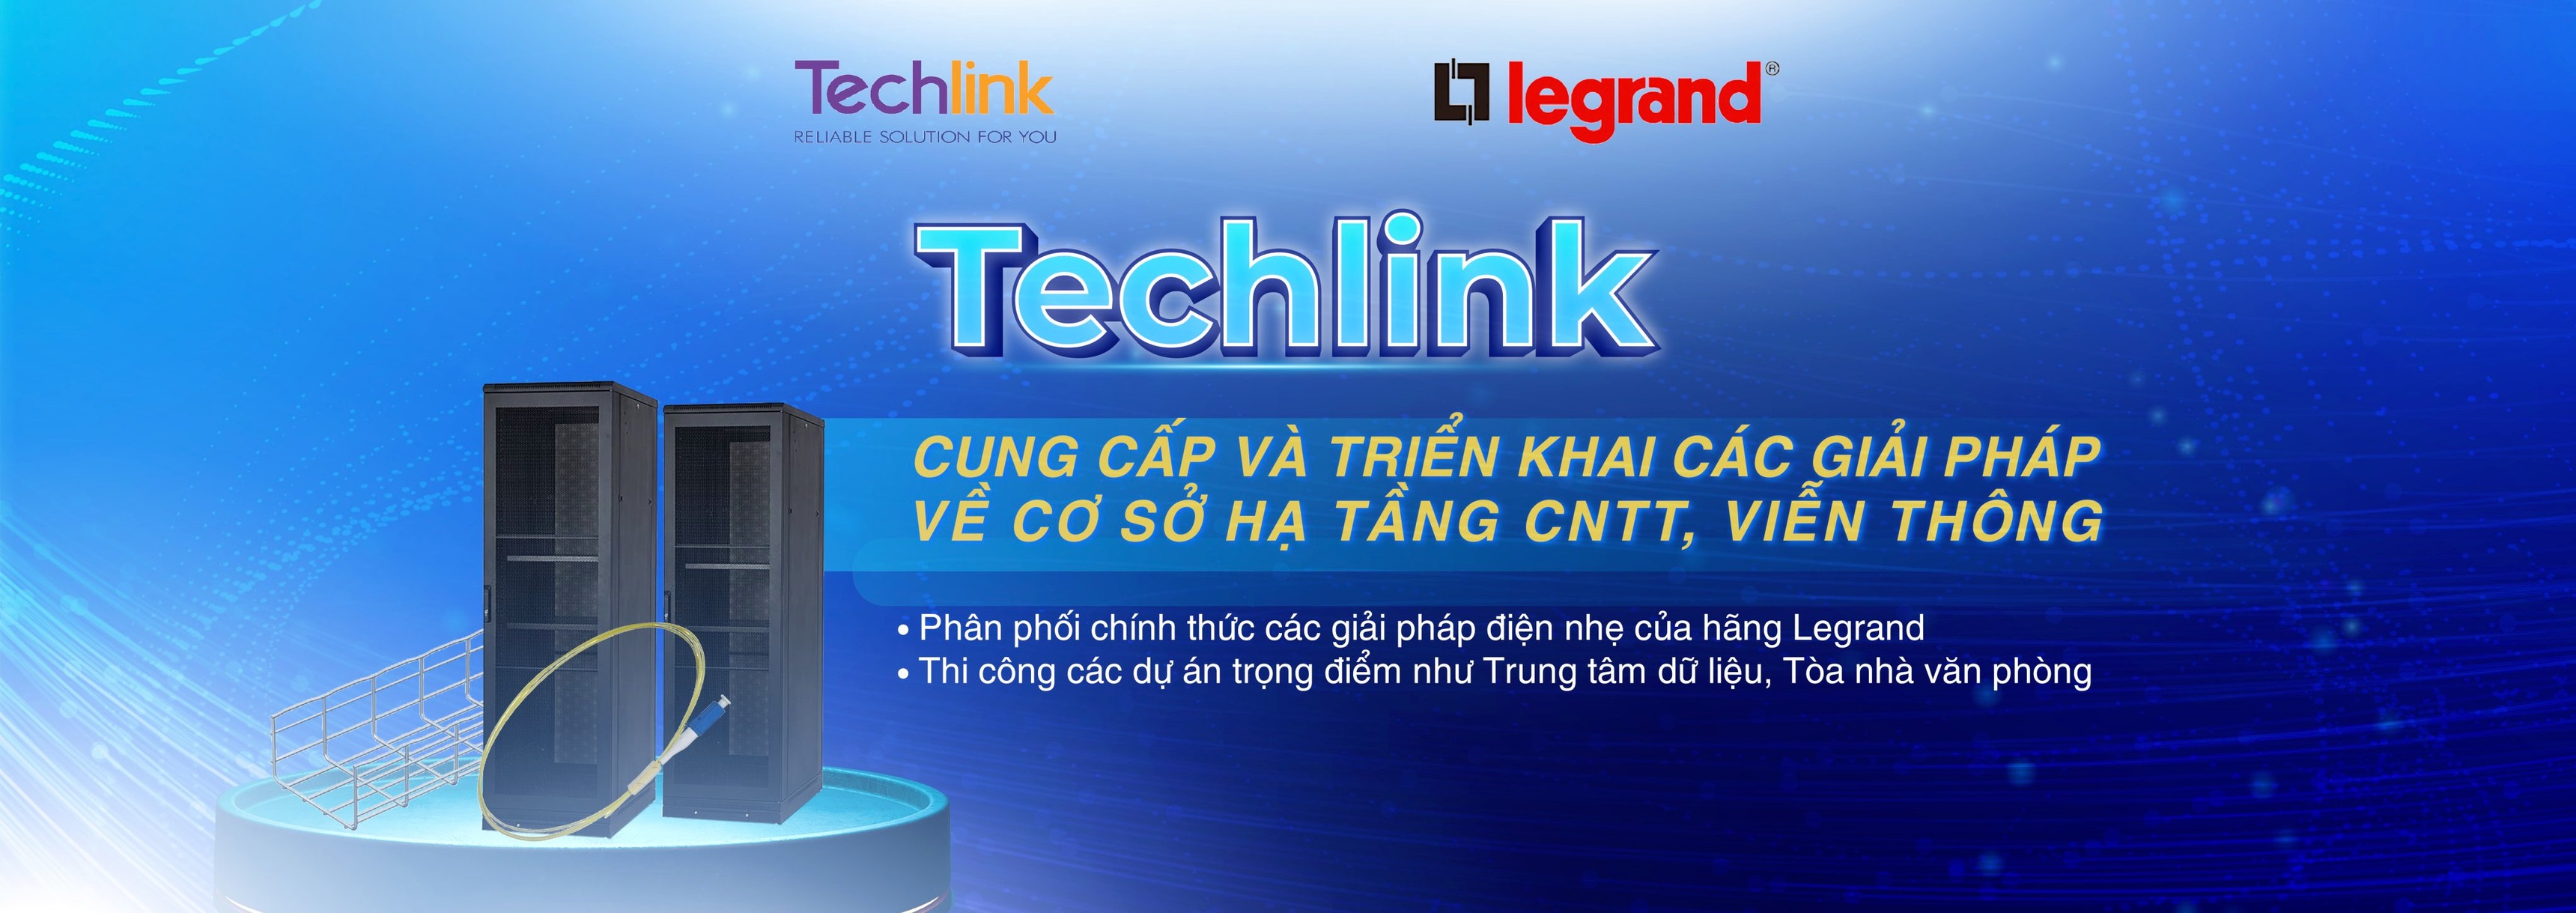 Công ty TNHH Giải Pháp Techlink